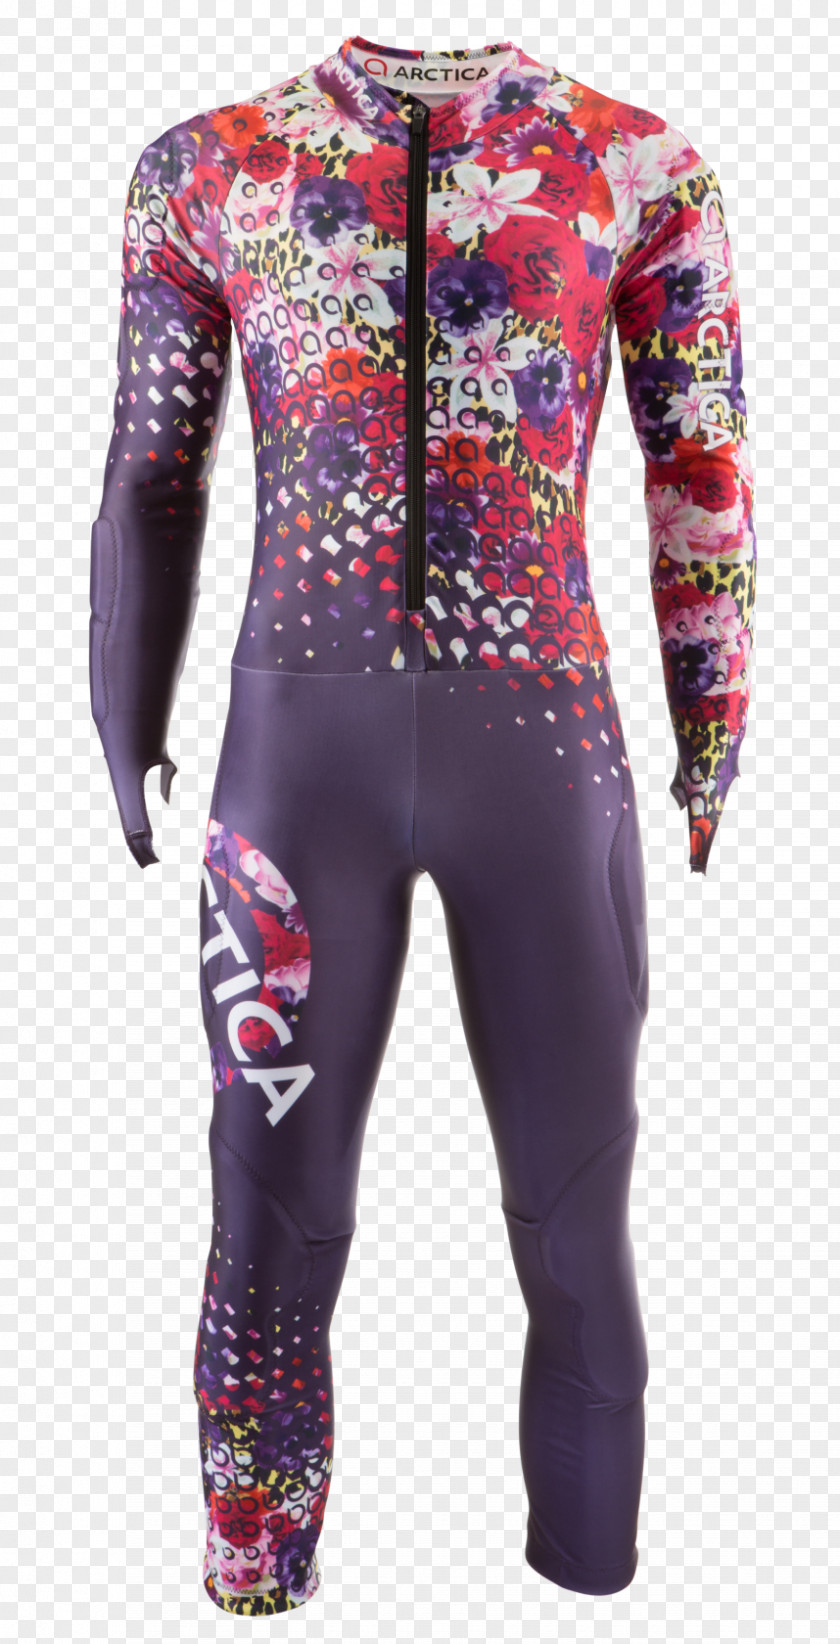 Cheetah Speedsuit Alpine Skiing Clothing PNG